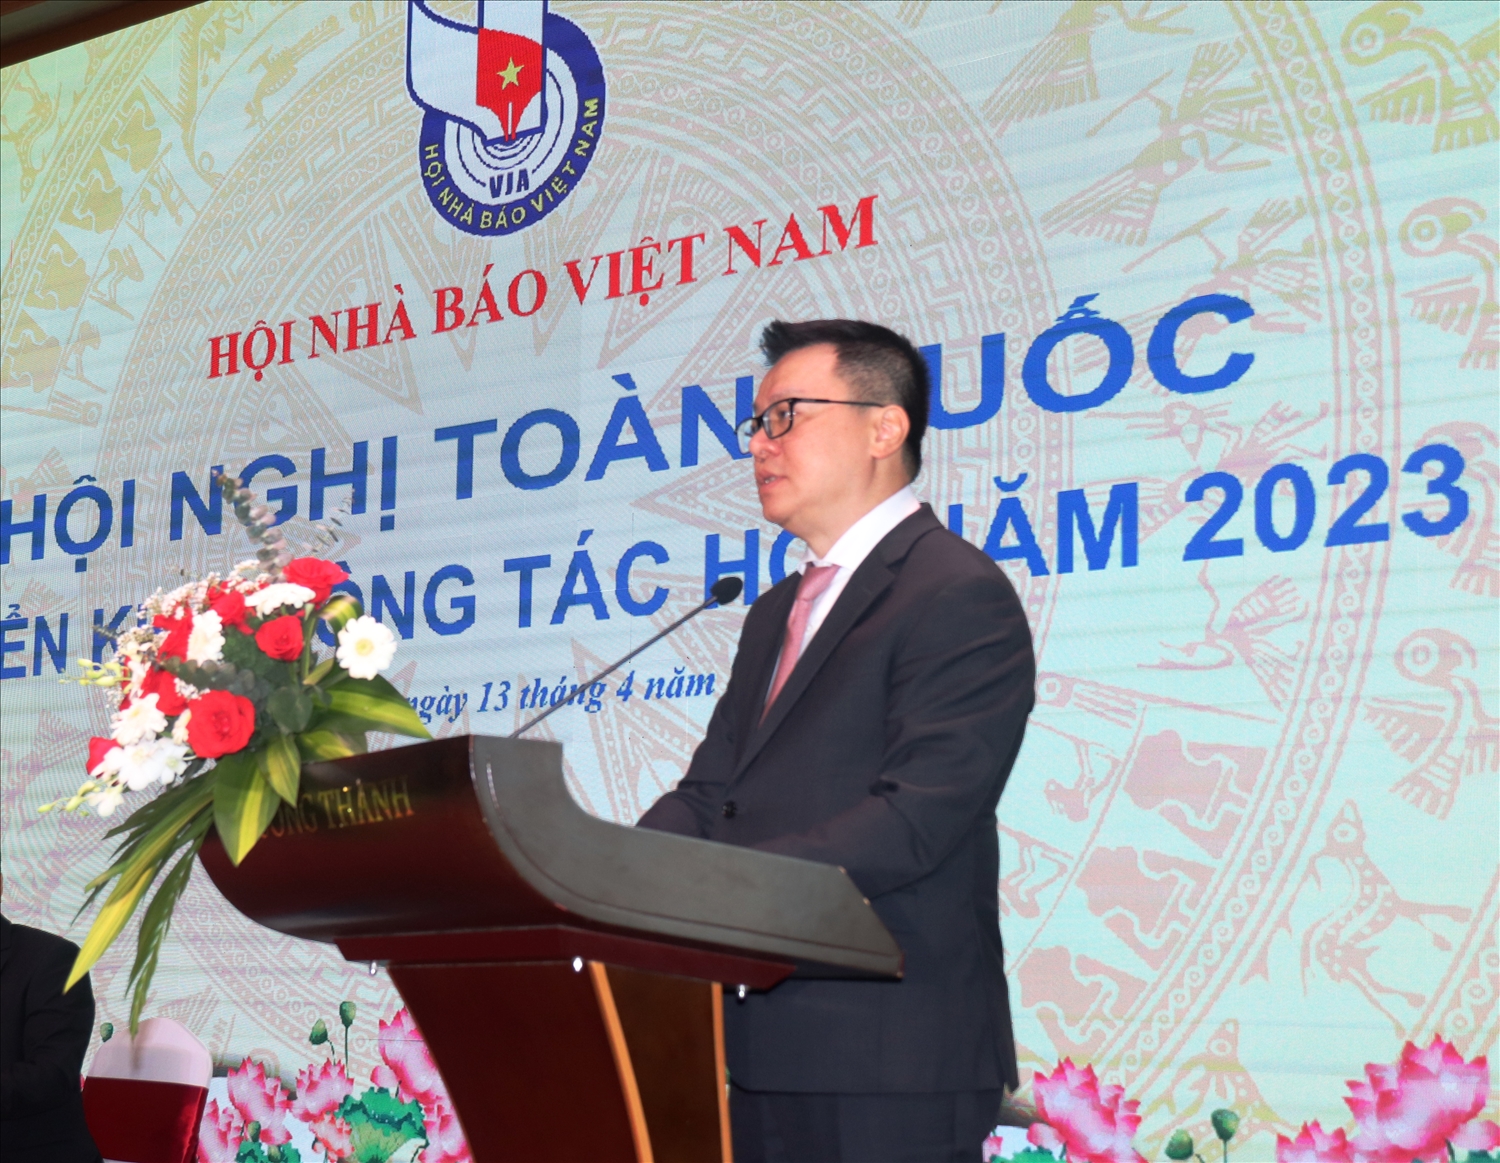 Ông Lê Quốc Minh, Tổng Biên tập Báo Nhân Dân, Phó Trưởng Ban Tuyên giáo Trung ương, Chủ tịch Hội Nhà báo Việt Nam phát biểu tại Hội nghị